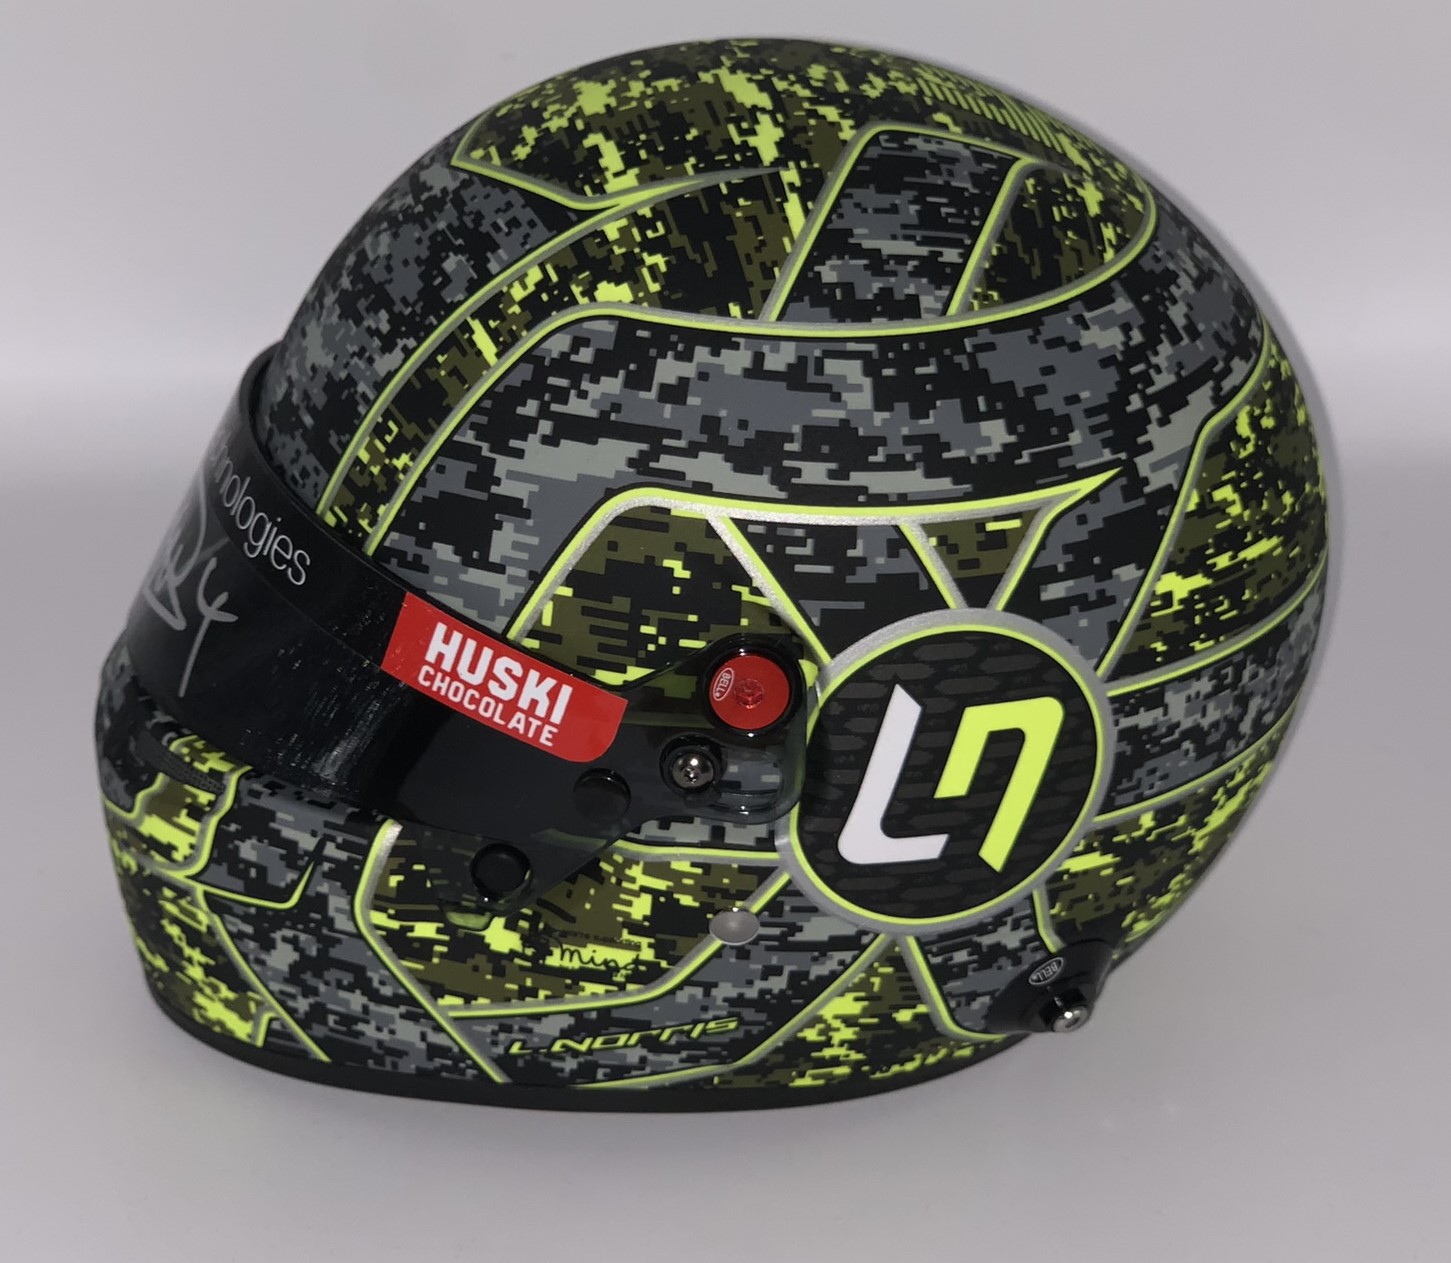 Lando Norris (UK) signed McLaren F1 ½ scale helmet (2021 Glitch) 2021 Test Helmet, Signed on Visor - Image 4 of 4